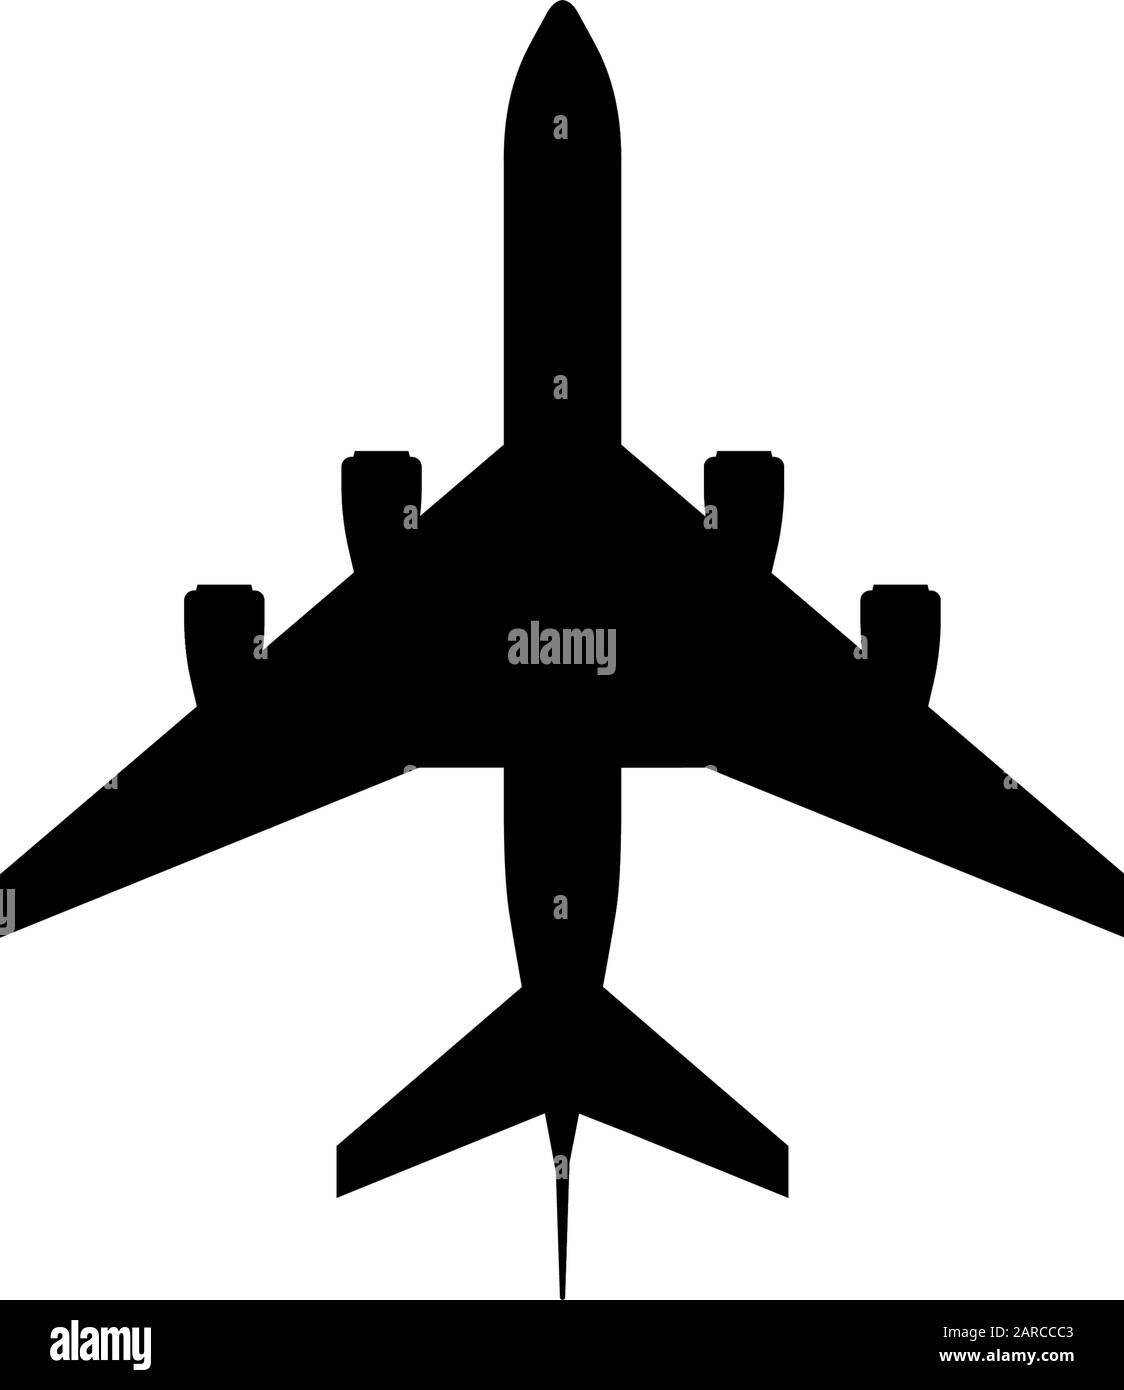 Großes Passagierflugzeug mit vier Triebwerken, schwarzes Symbol. Zivile Luftfahrt Flieger Draufsicht. Flache Vektorgrafiken Stock Vektor